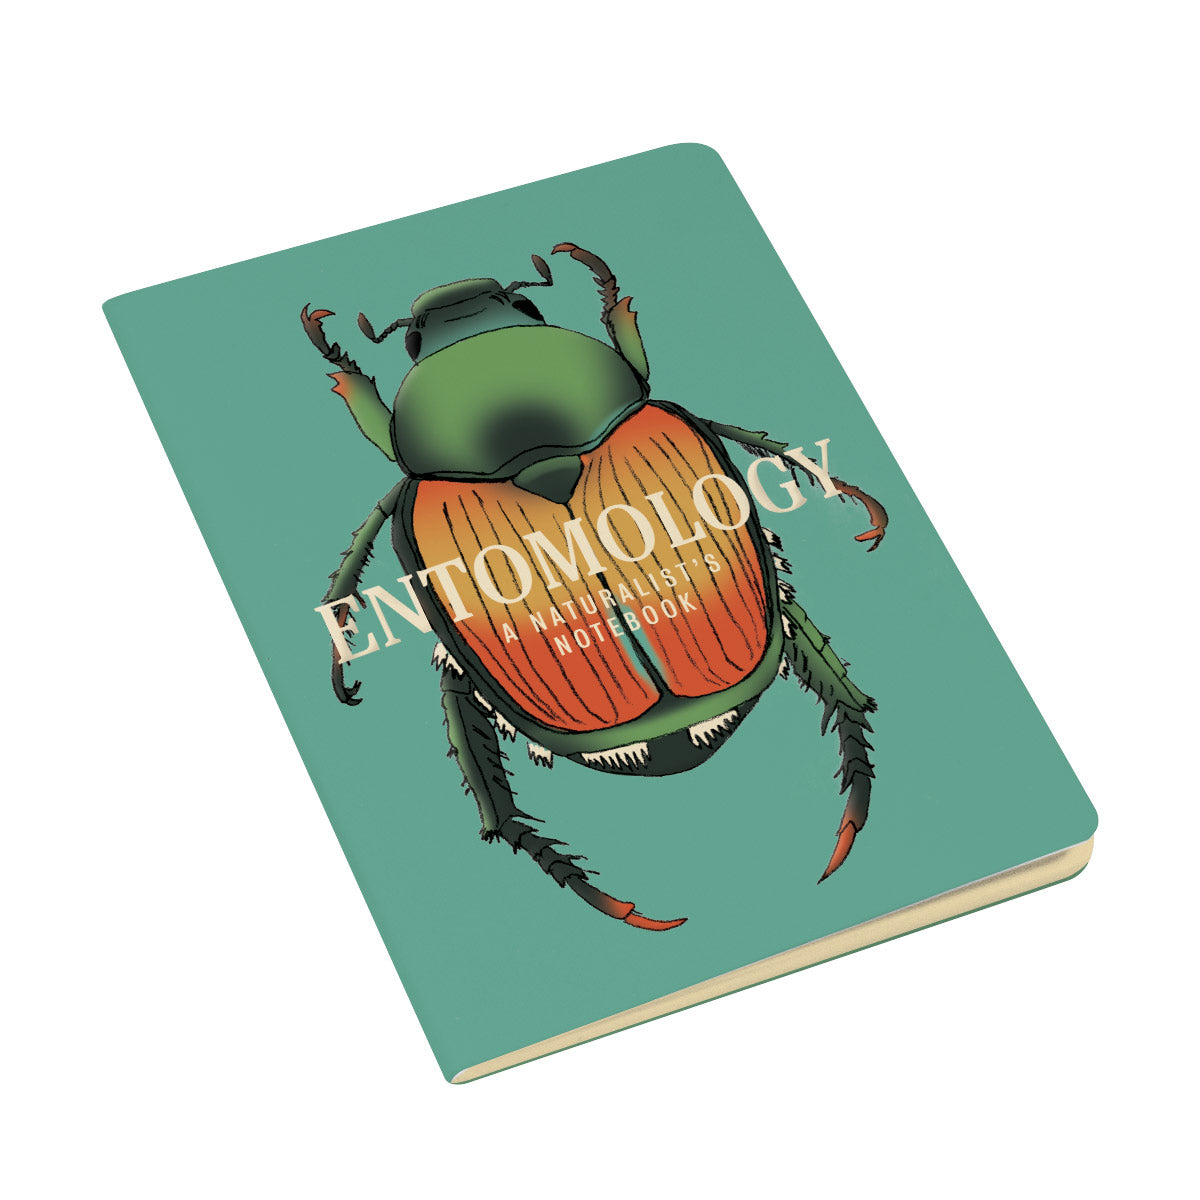 Entomology: A Naturalist's Notebook